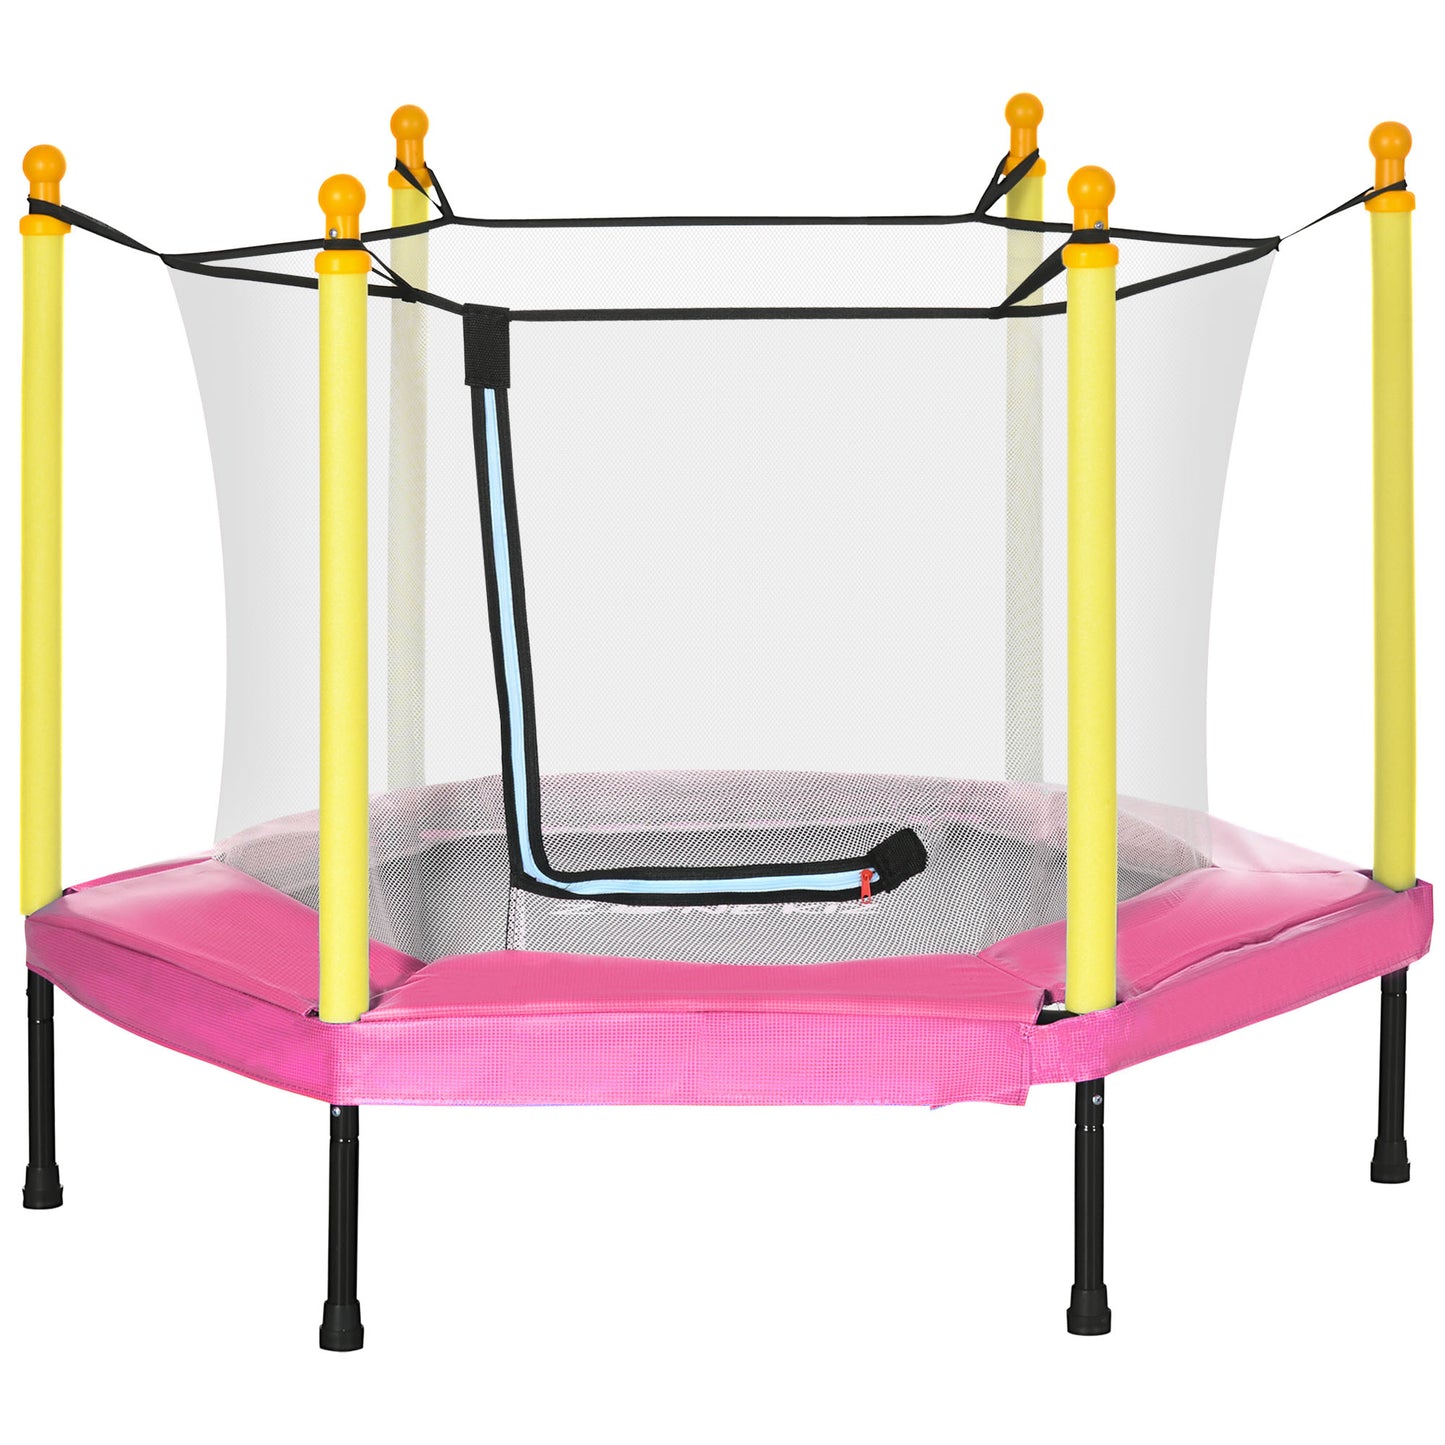 ZONEKIZ Cama Elástica para Niños con Superficie de Salto 95x85 cm Red de Seguridad Trampolín Infantil para Niños de 3-6 Años para Interior Carga 50 kg Rosa